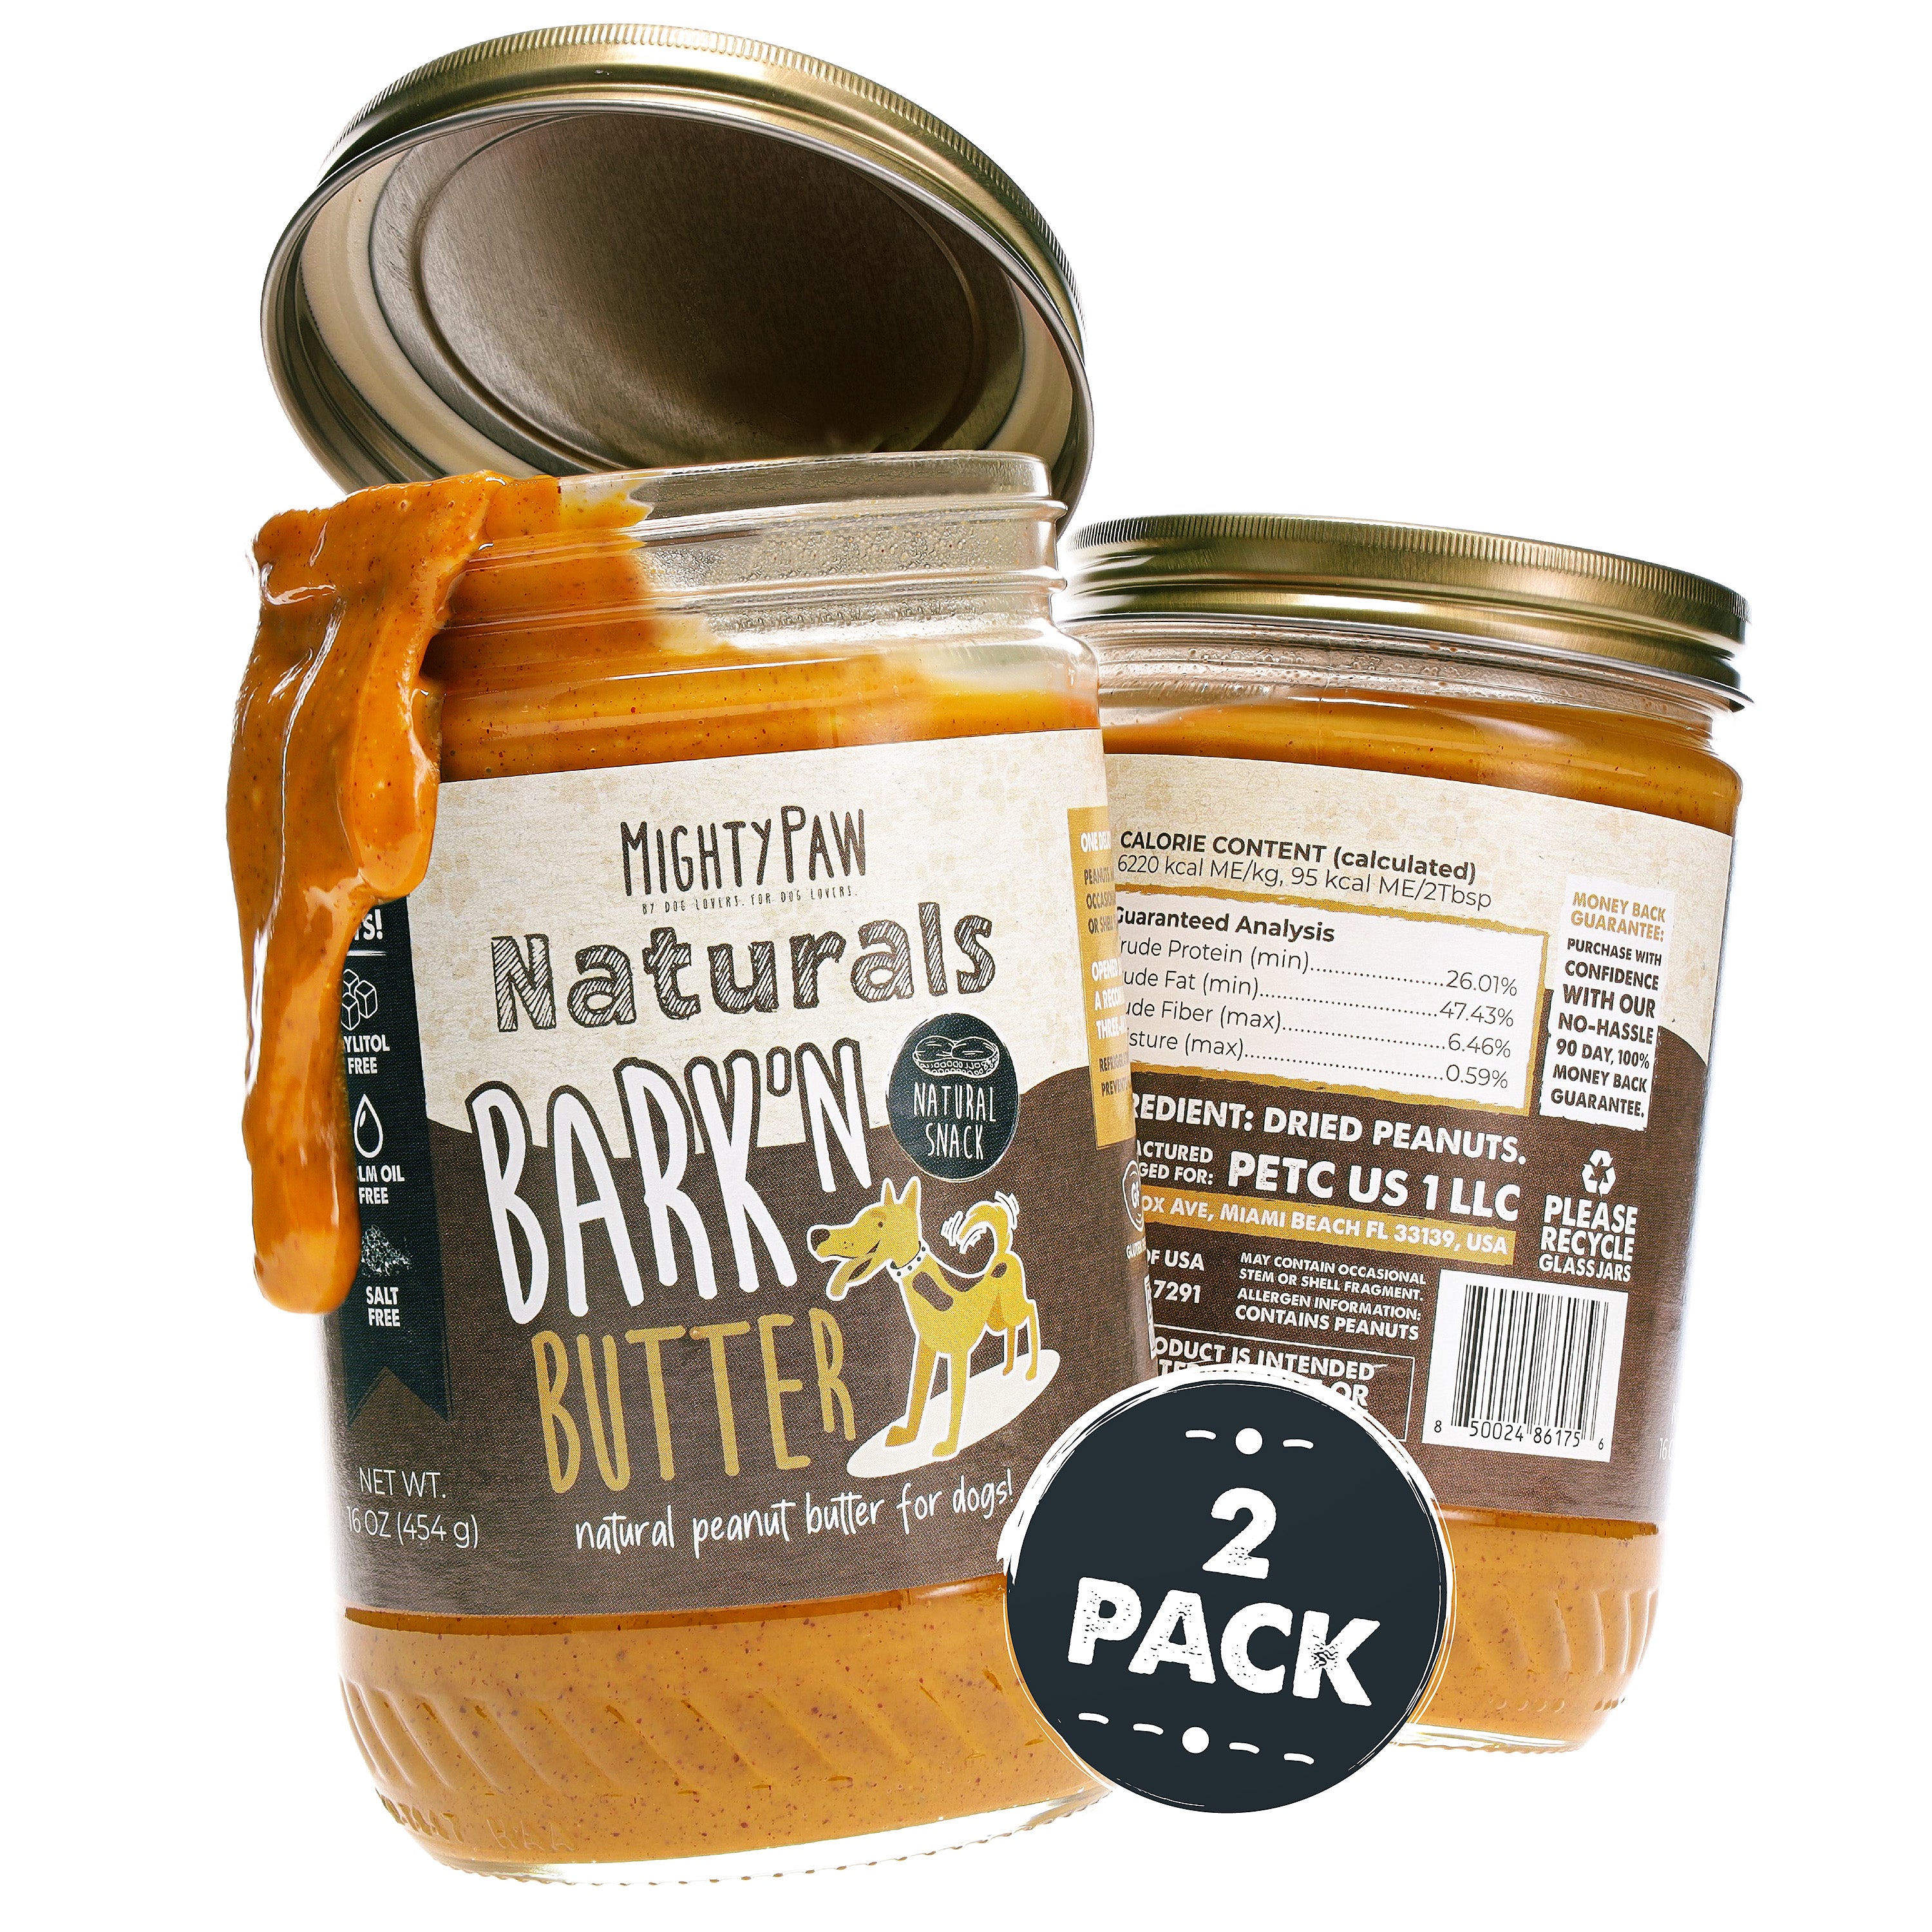 Bark'n Butter Peanut Butter for Dogs (2 Pack)